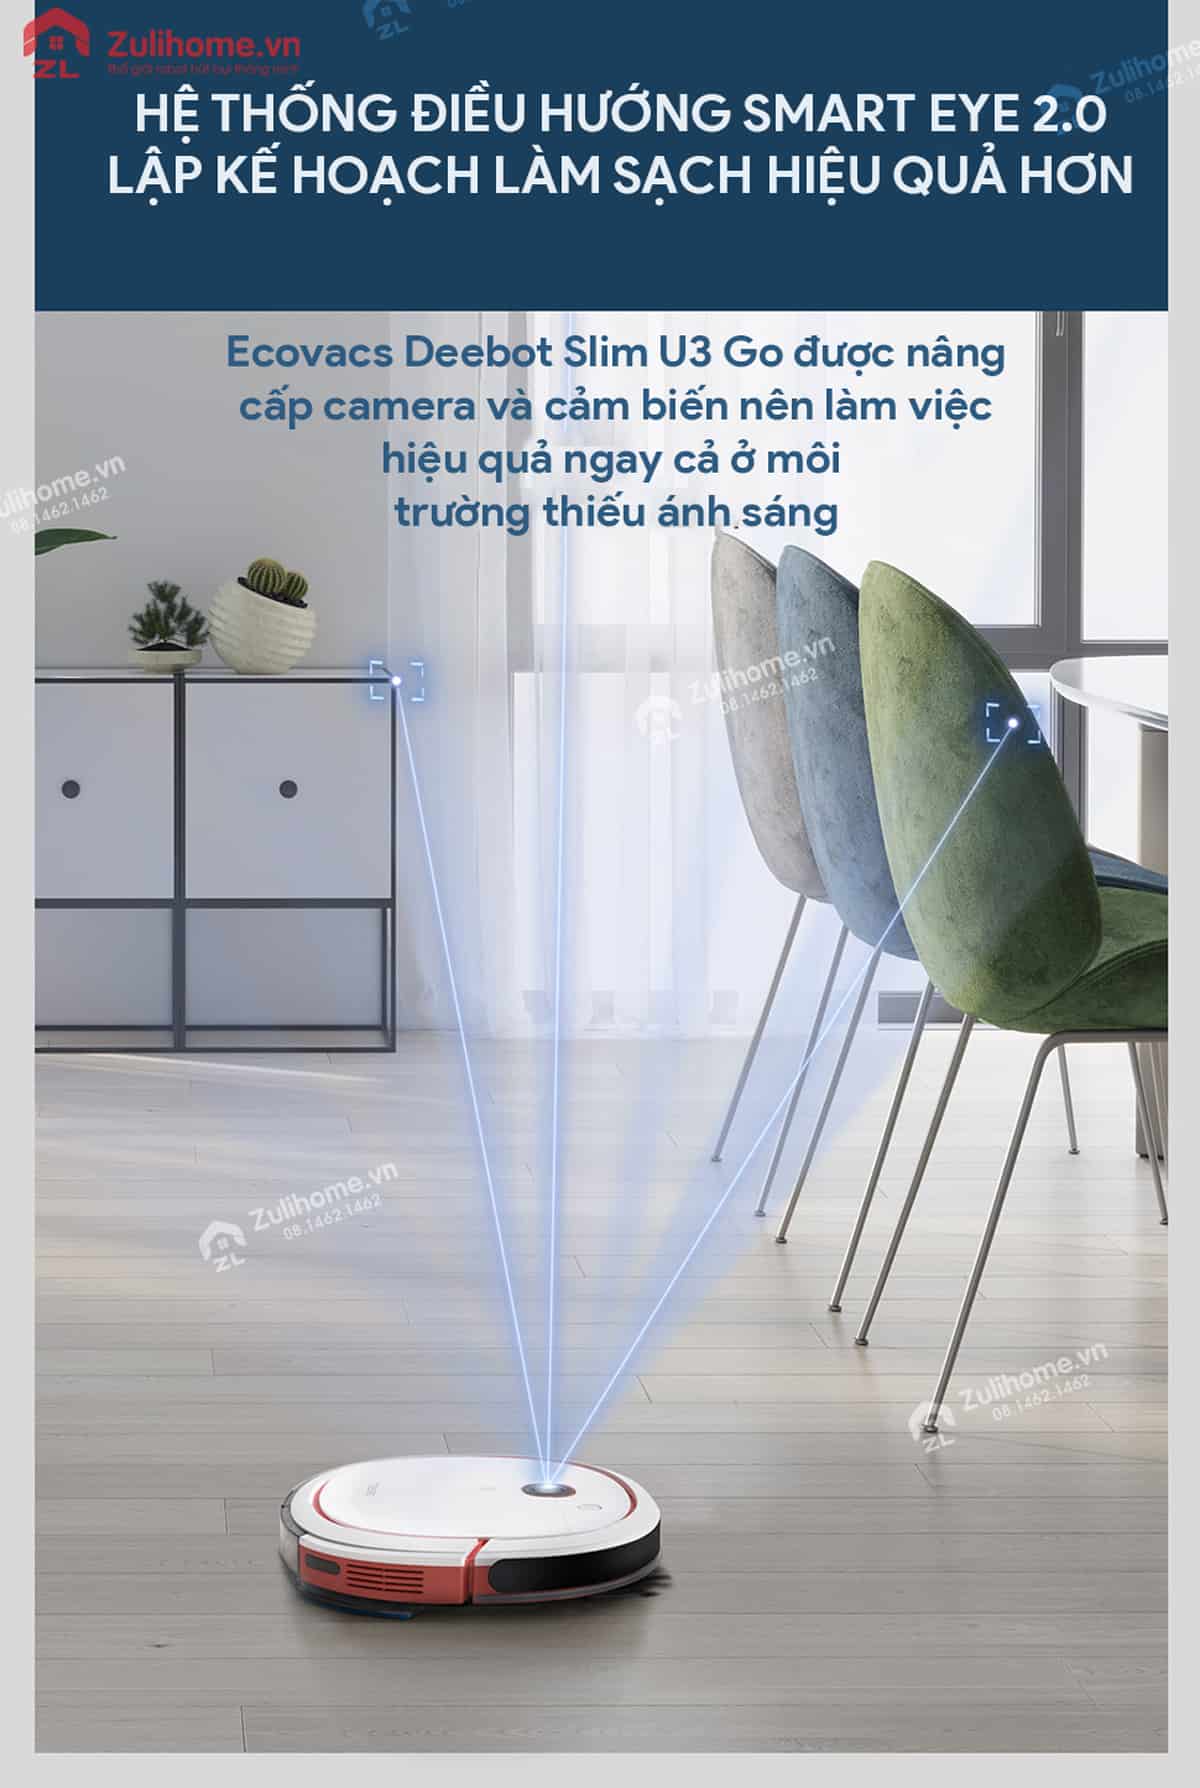 Ecovacs Deebot Slim U3 Go - DK41 có hệ thống điều hướng thông minh